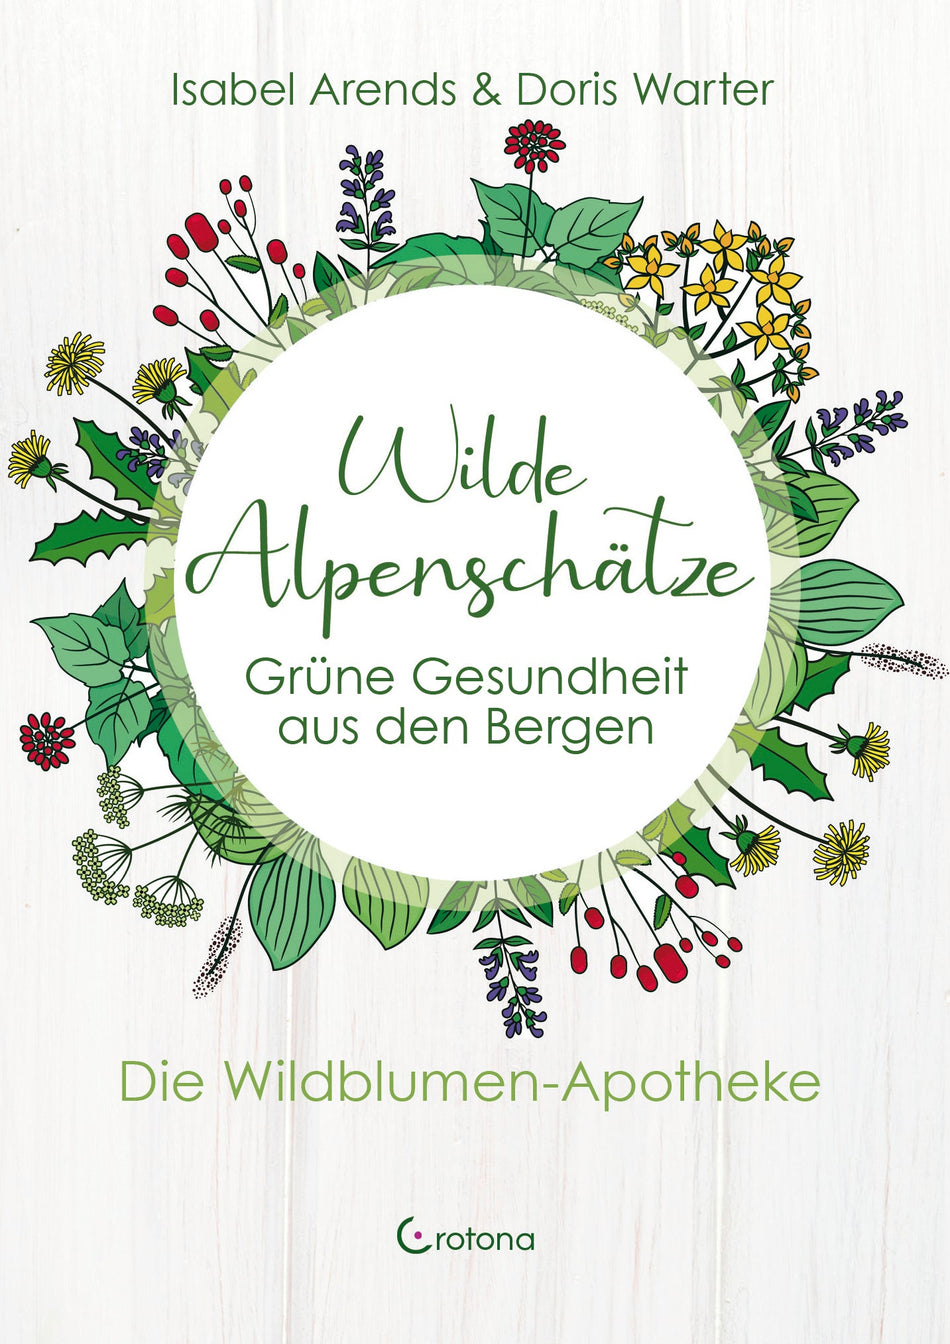 Wilde Alpenschätze von I. Arends & D.Warter - Das Raeucherwerk